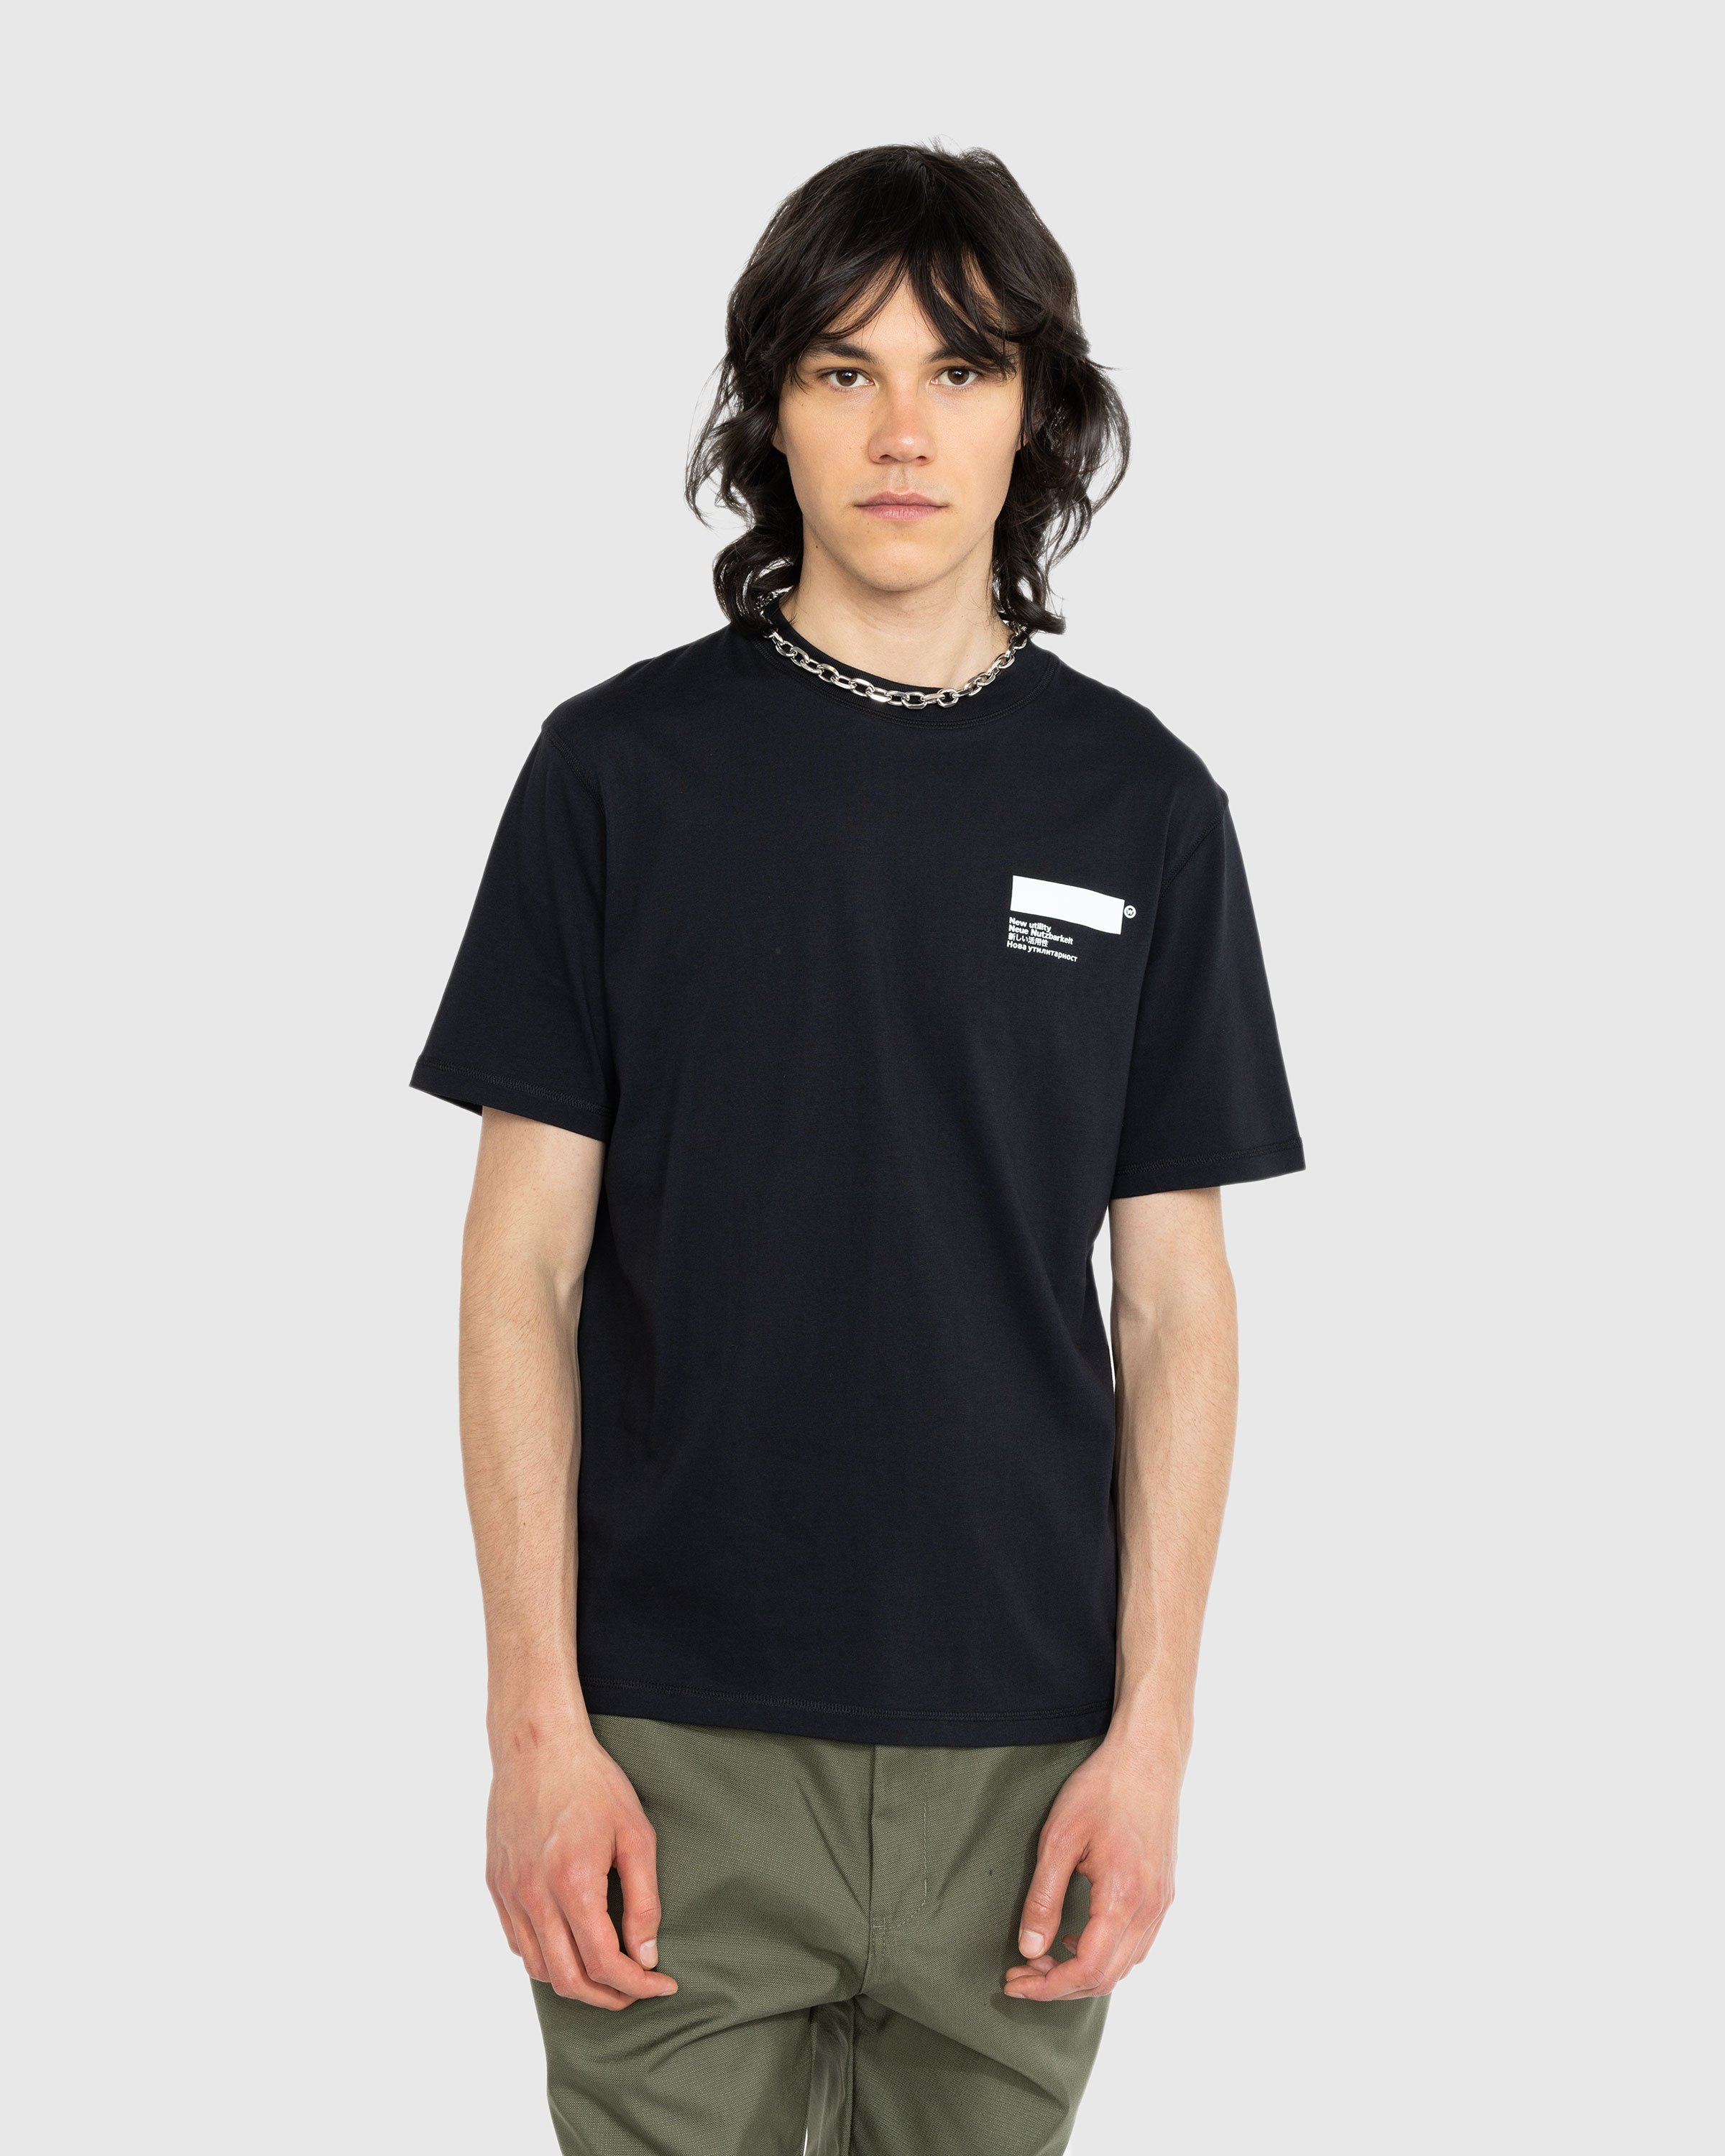 AFFXWRKS - Standardized T-Shirt Deep Black - Clothing - Black - Image 3